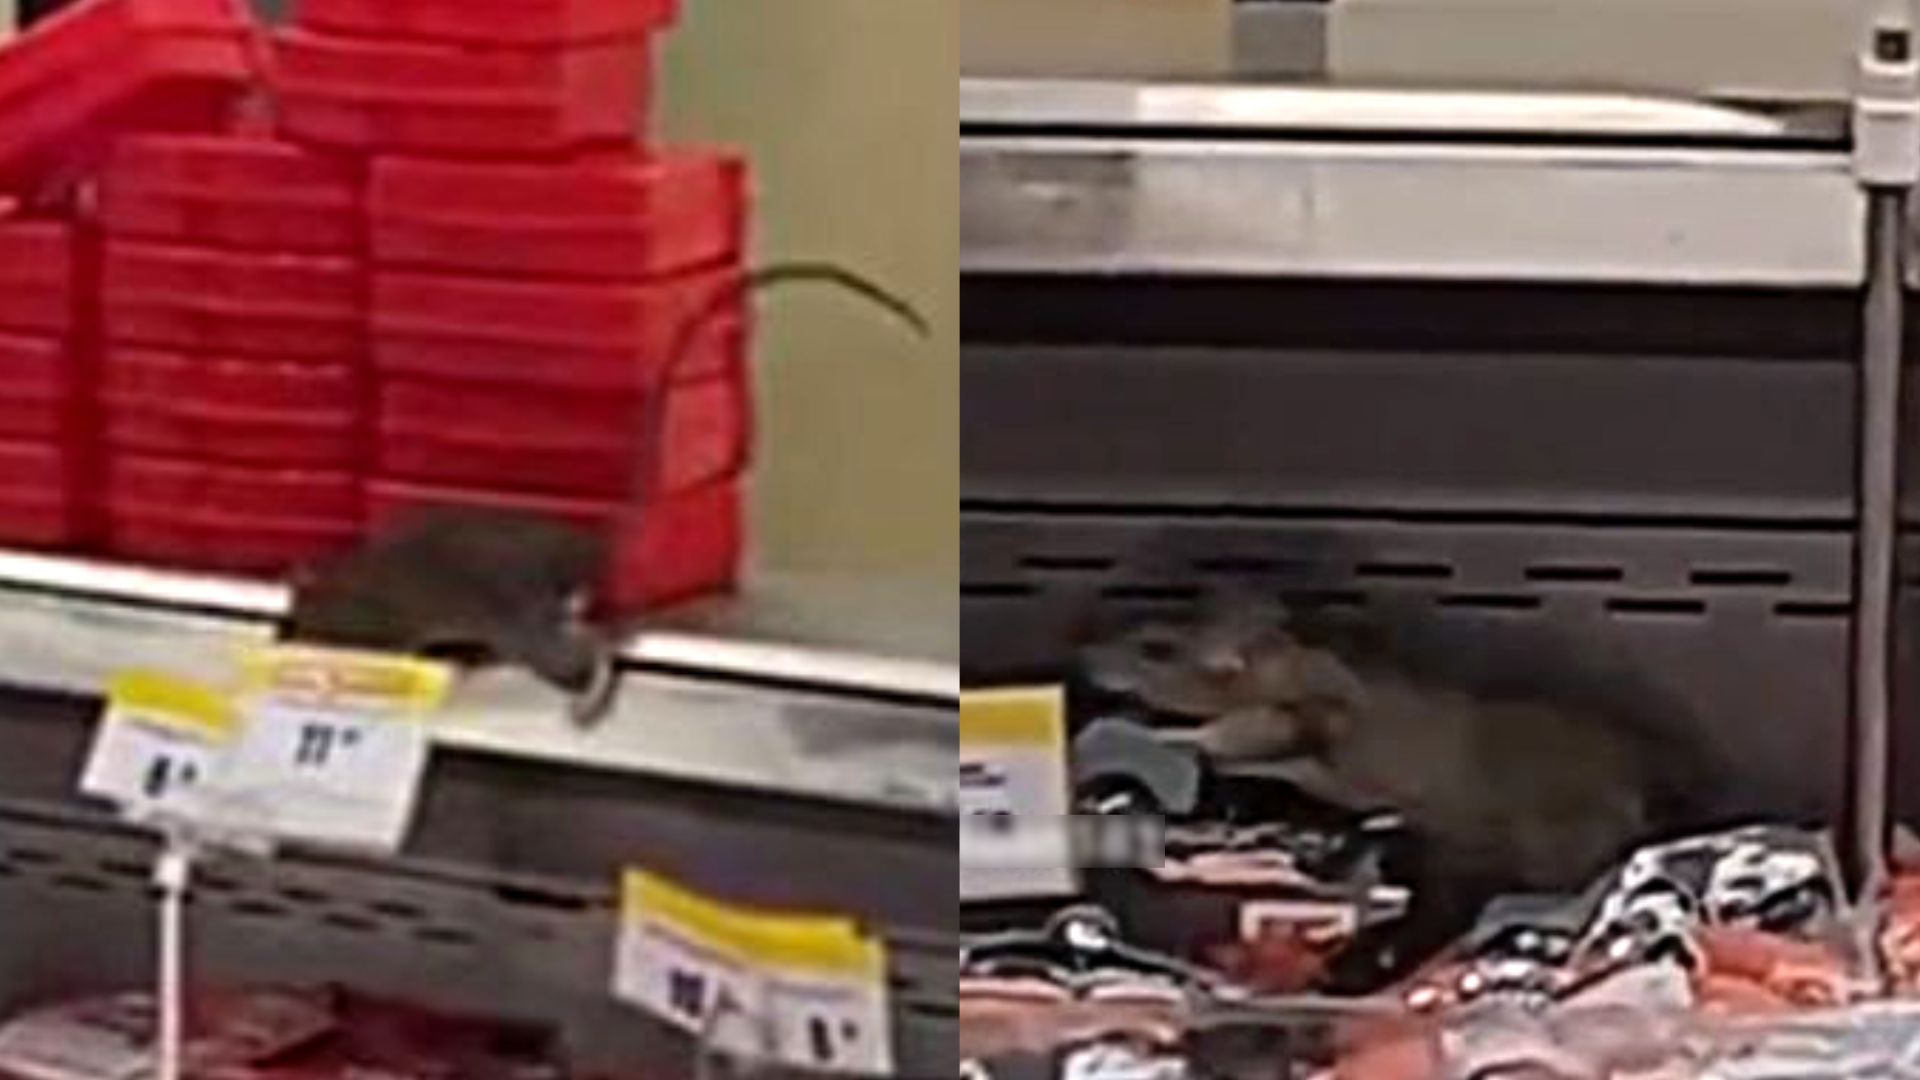 Graban a dos ratas gigantes en Metro y clientes piden que las autoridades se pronuncien. El video se volvió viral en distintas redes sociales. (Captura)